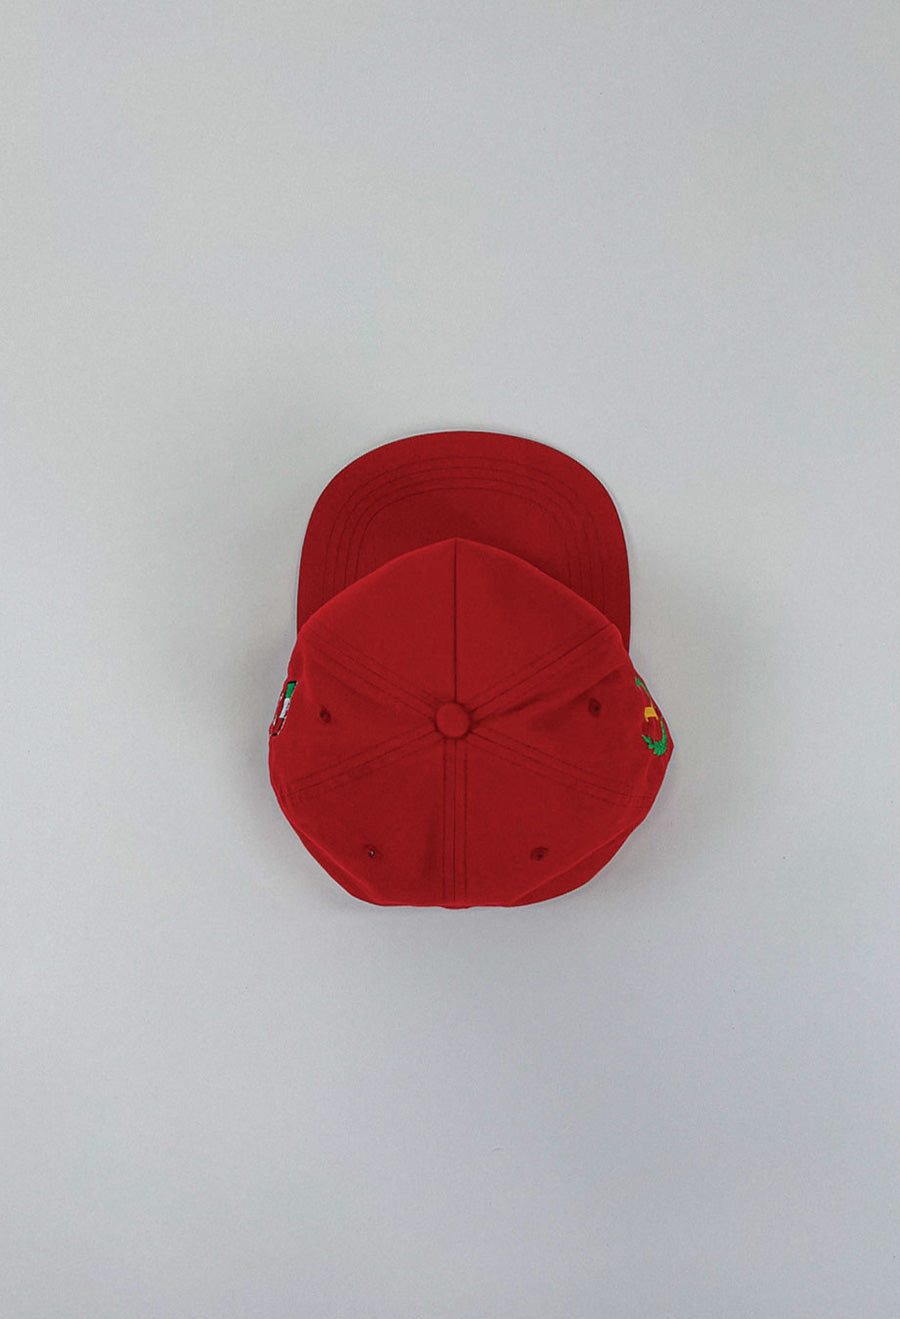 Monza Souvenir Hat Marlboro Red